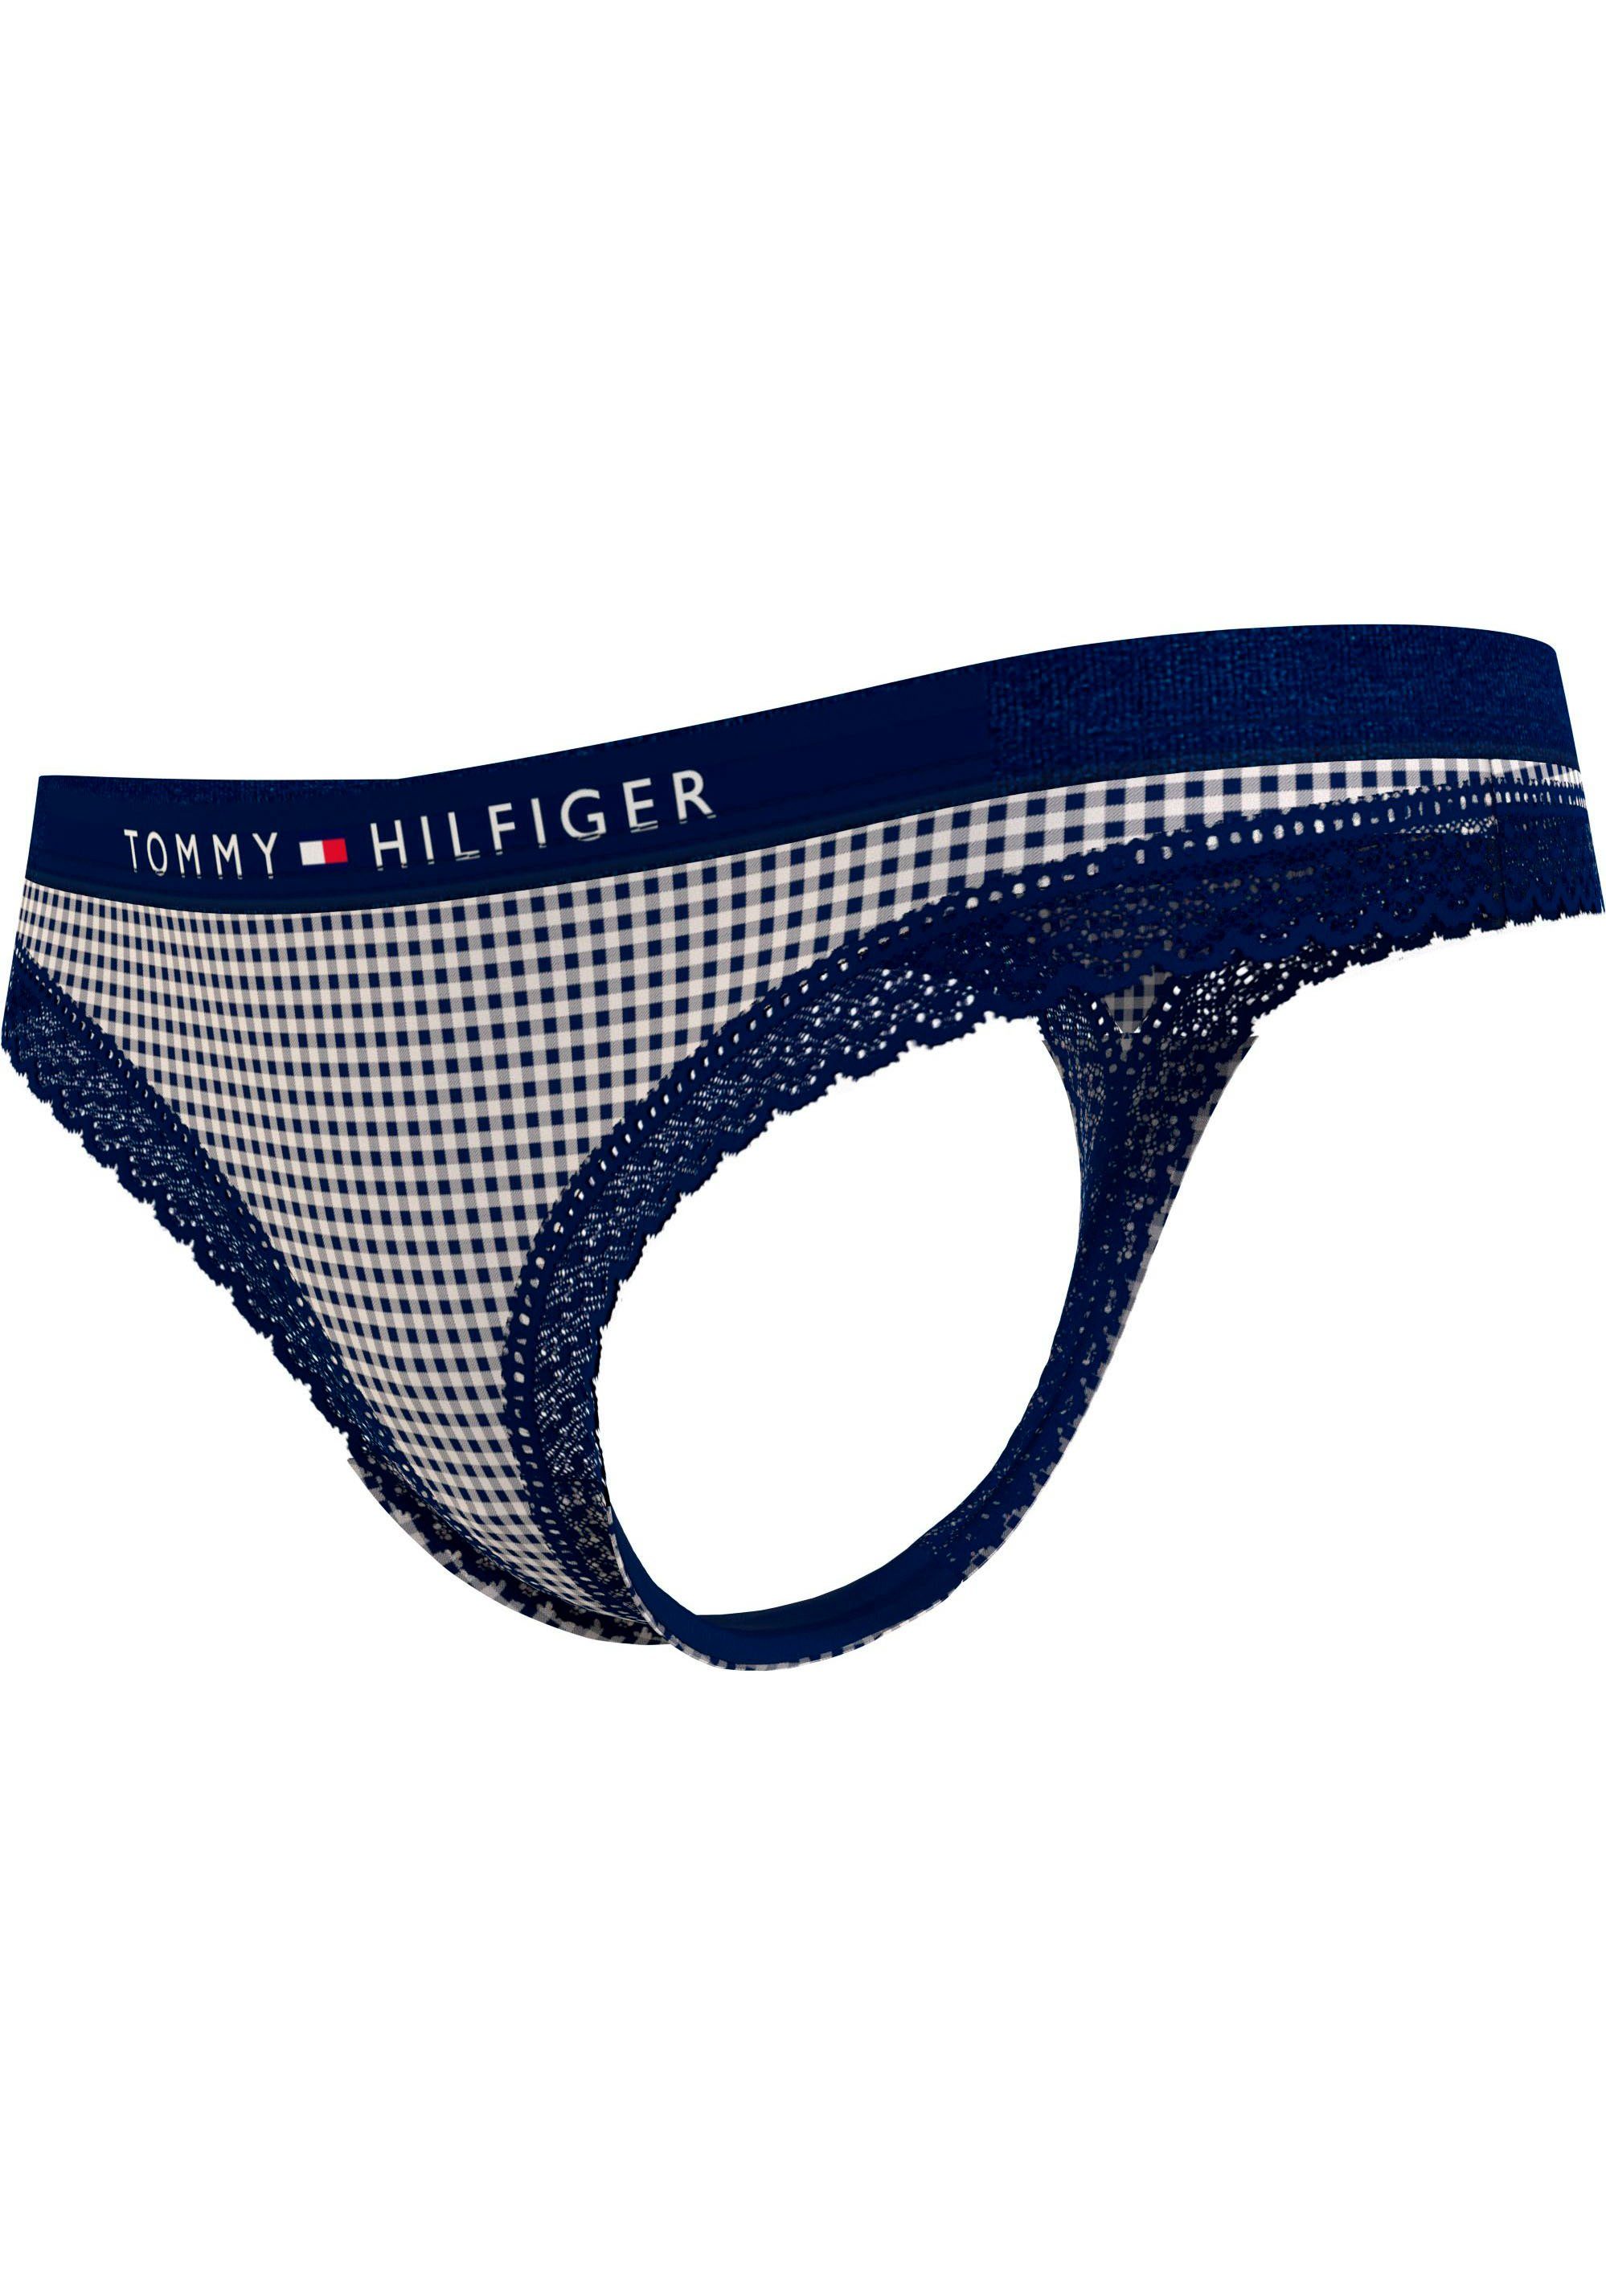 PRINT T-String Underwear am mit Hilfiger Tommy THONG Bund Logoschriftzug